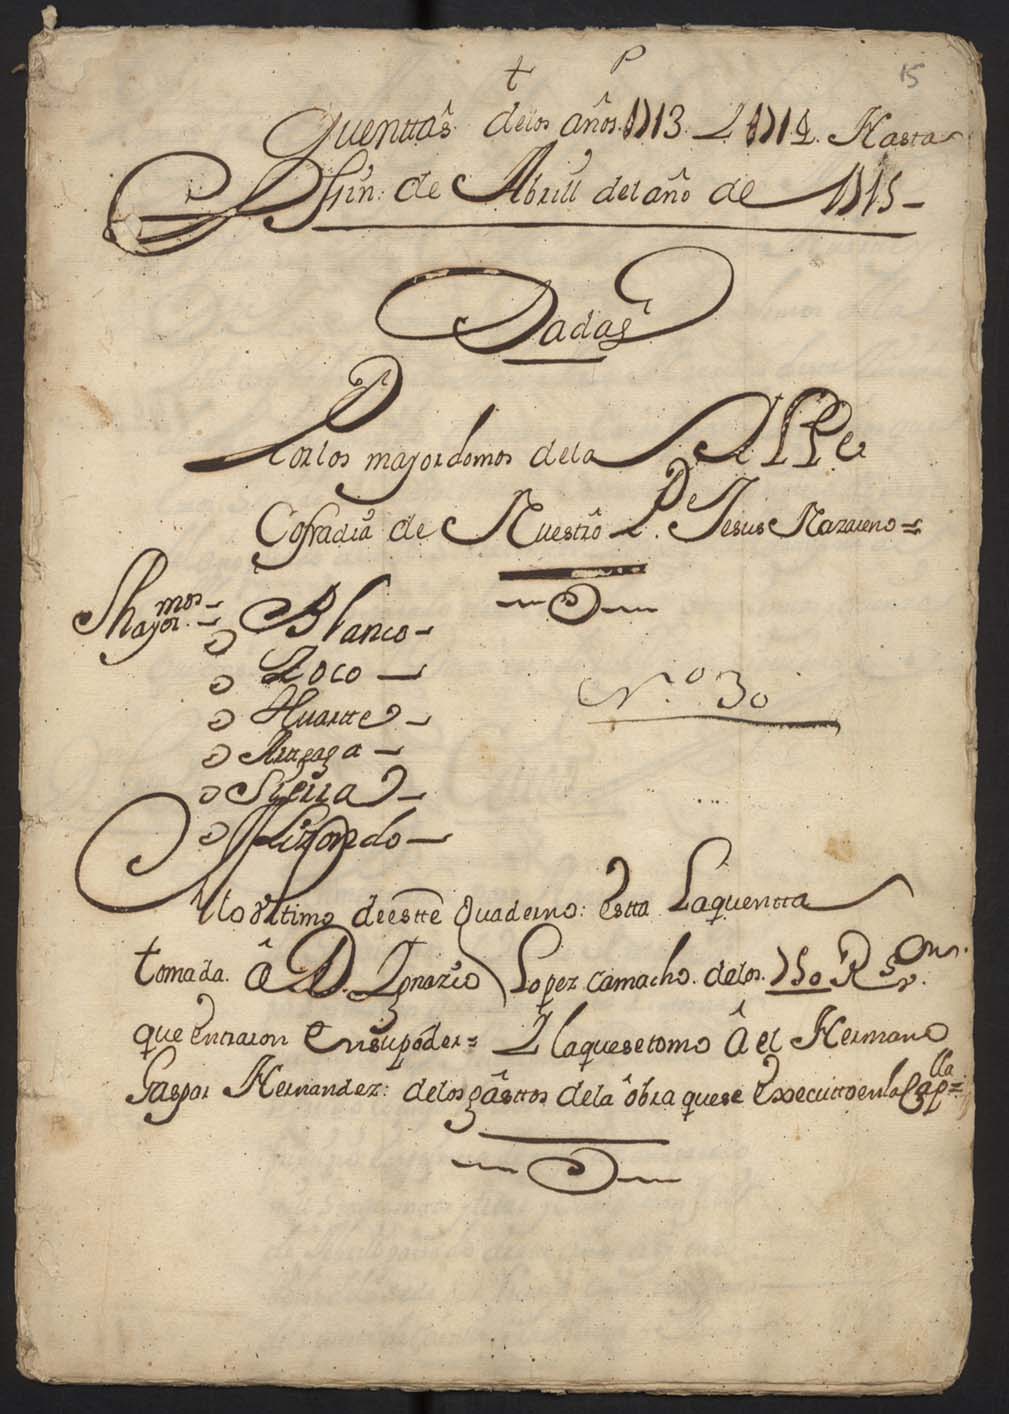 Cuentas de la Cofradía de Jesús de los años 1713 a 1715.